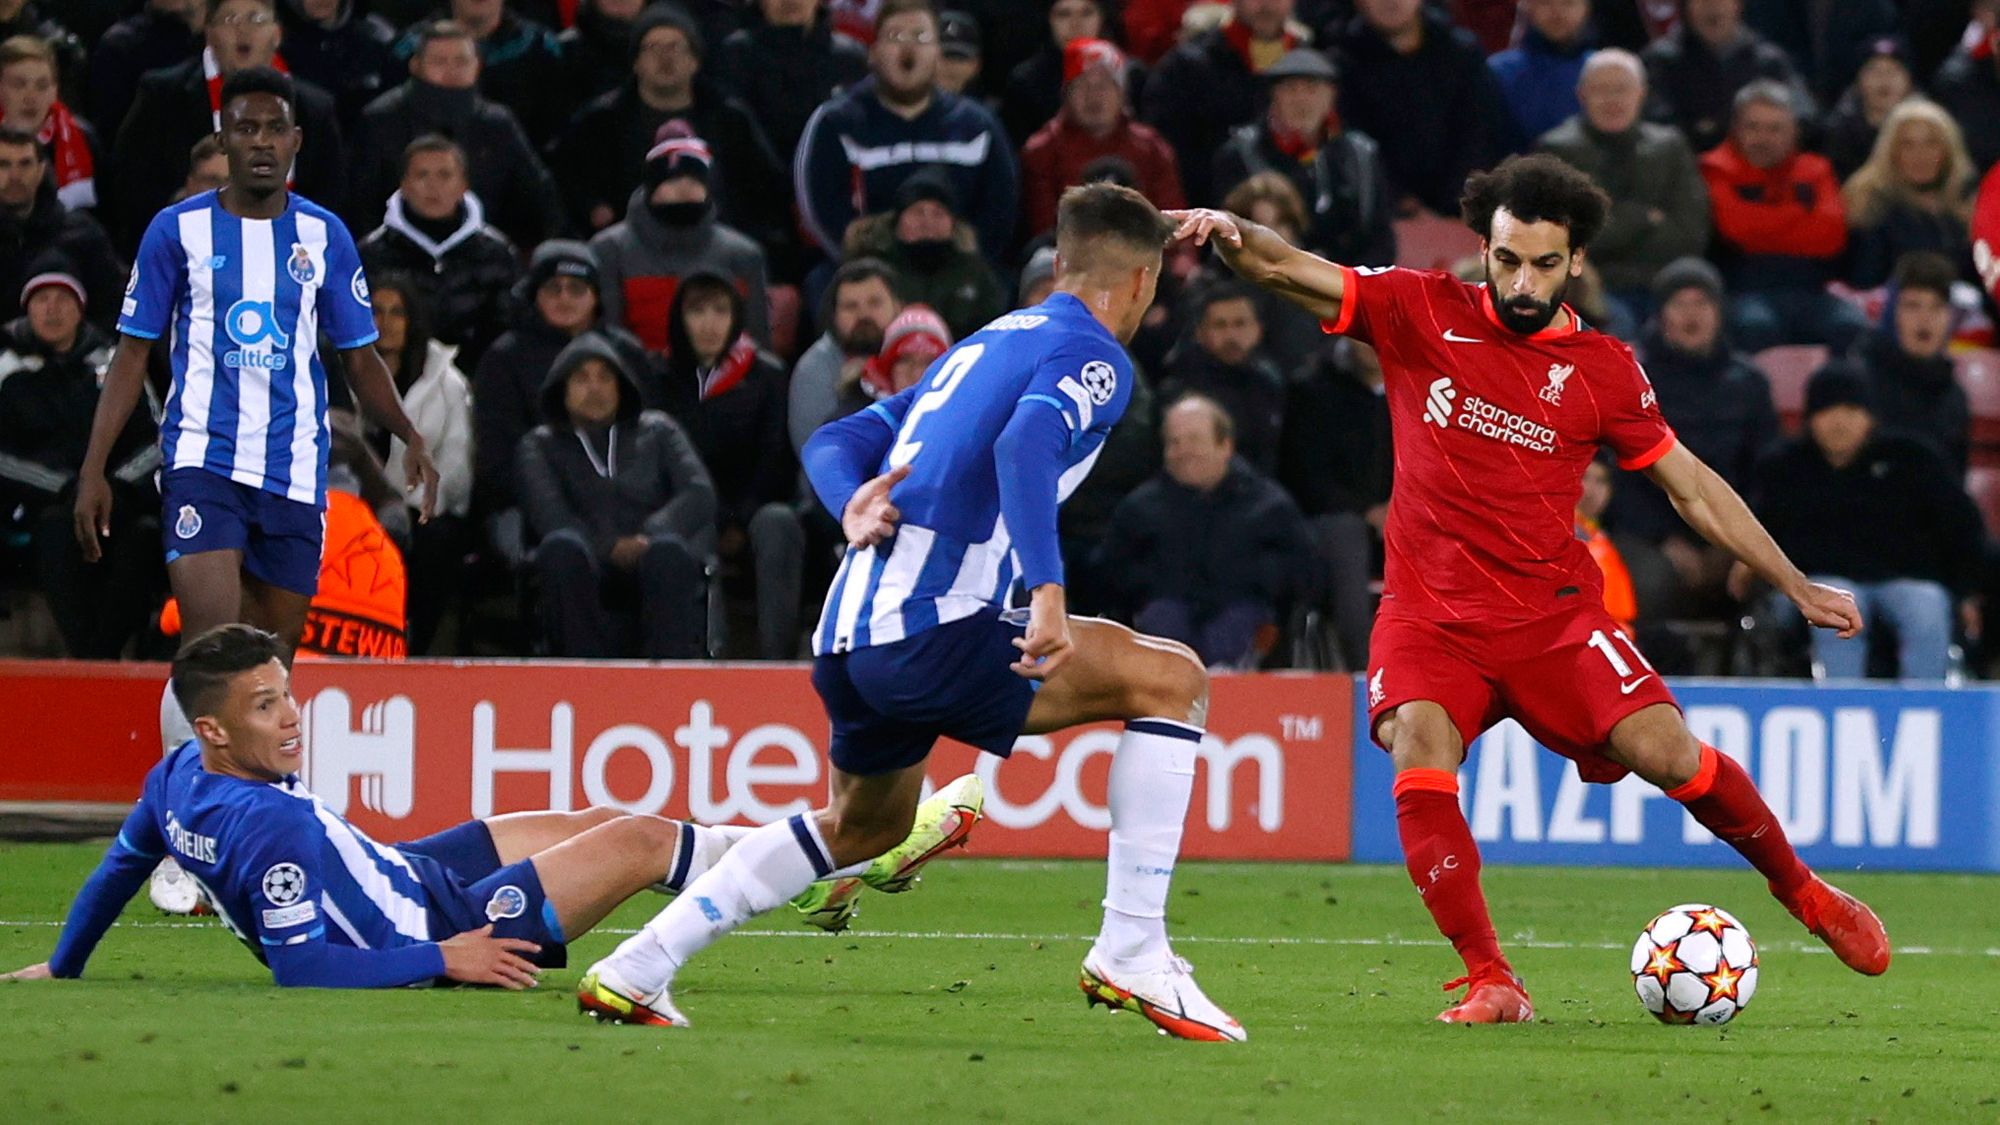 7. Mohamed Salah - Liverpool - 121 puntos